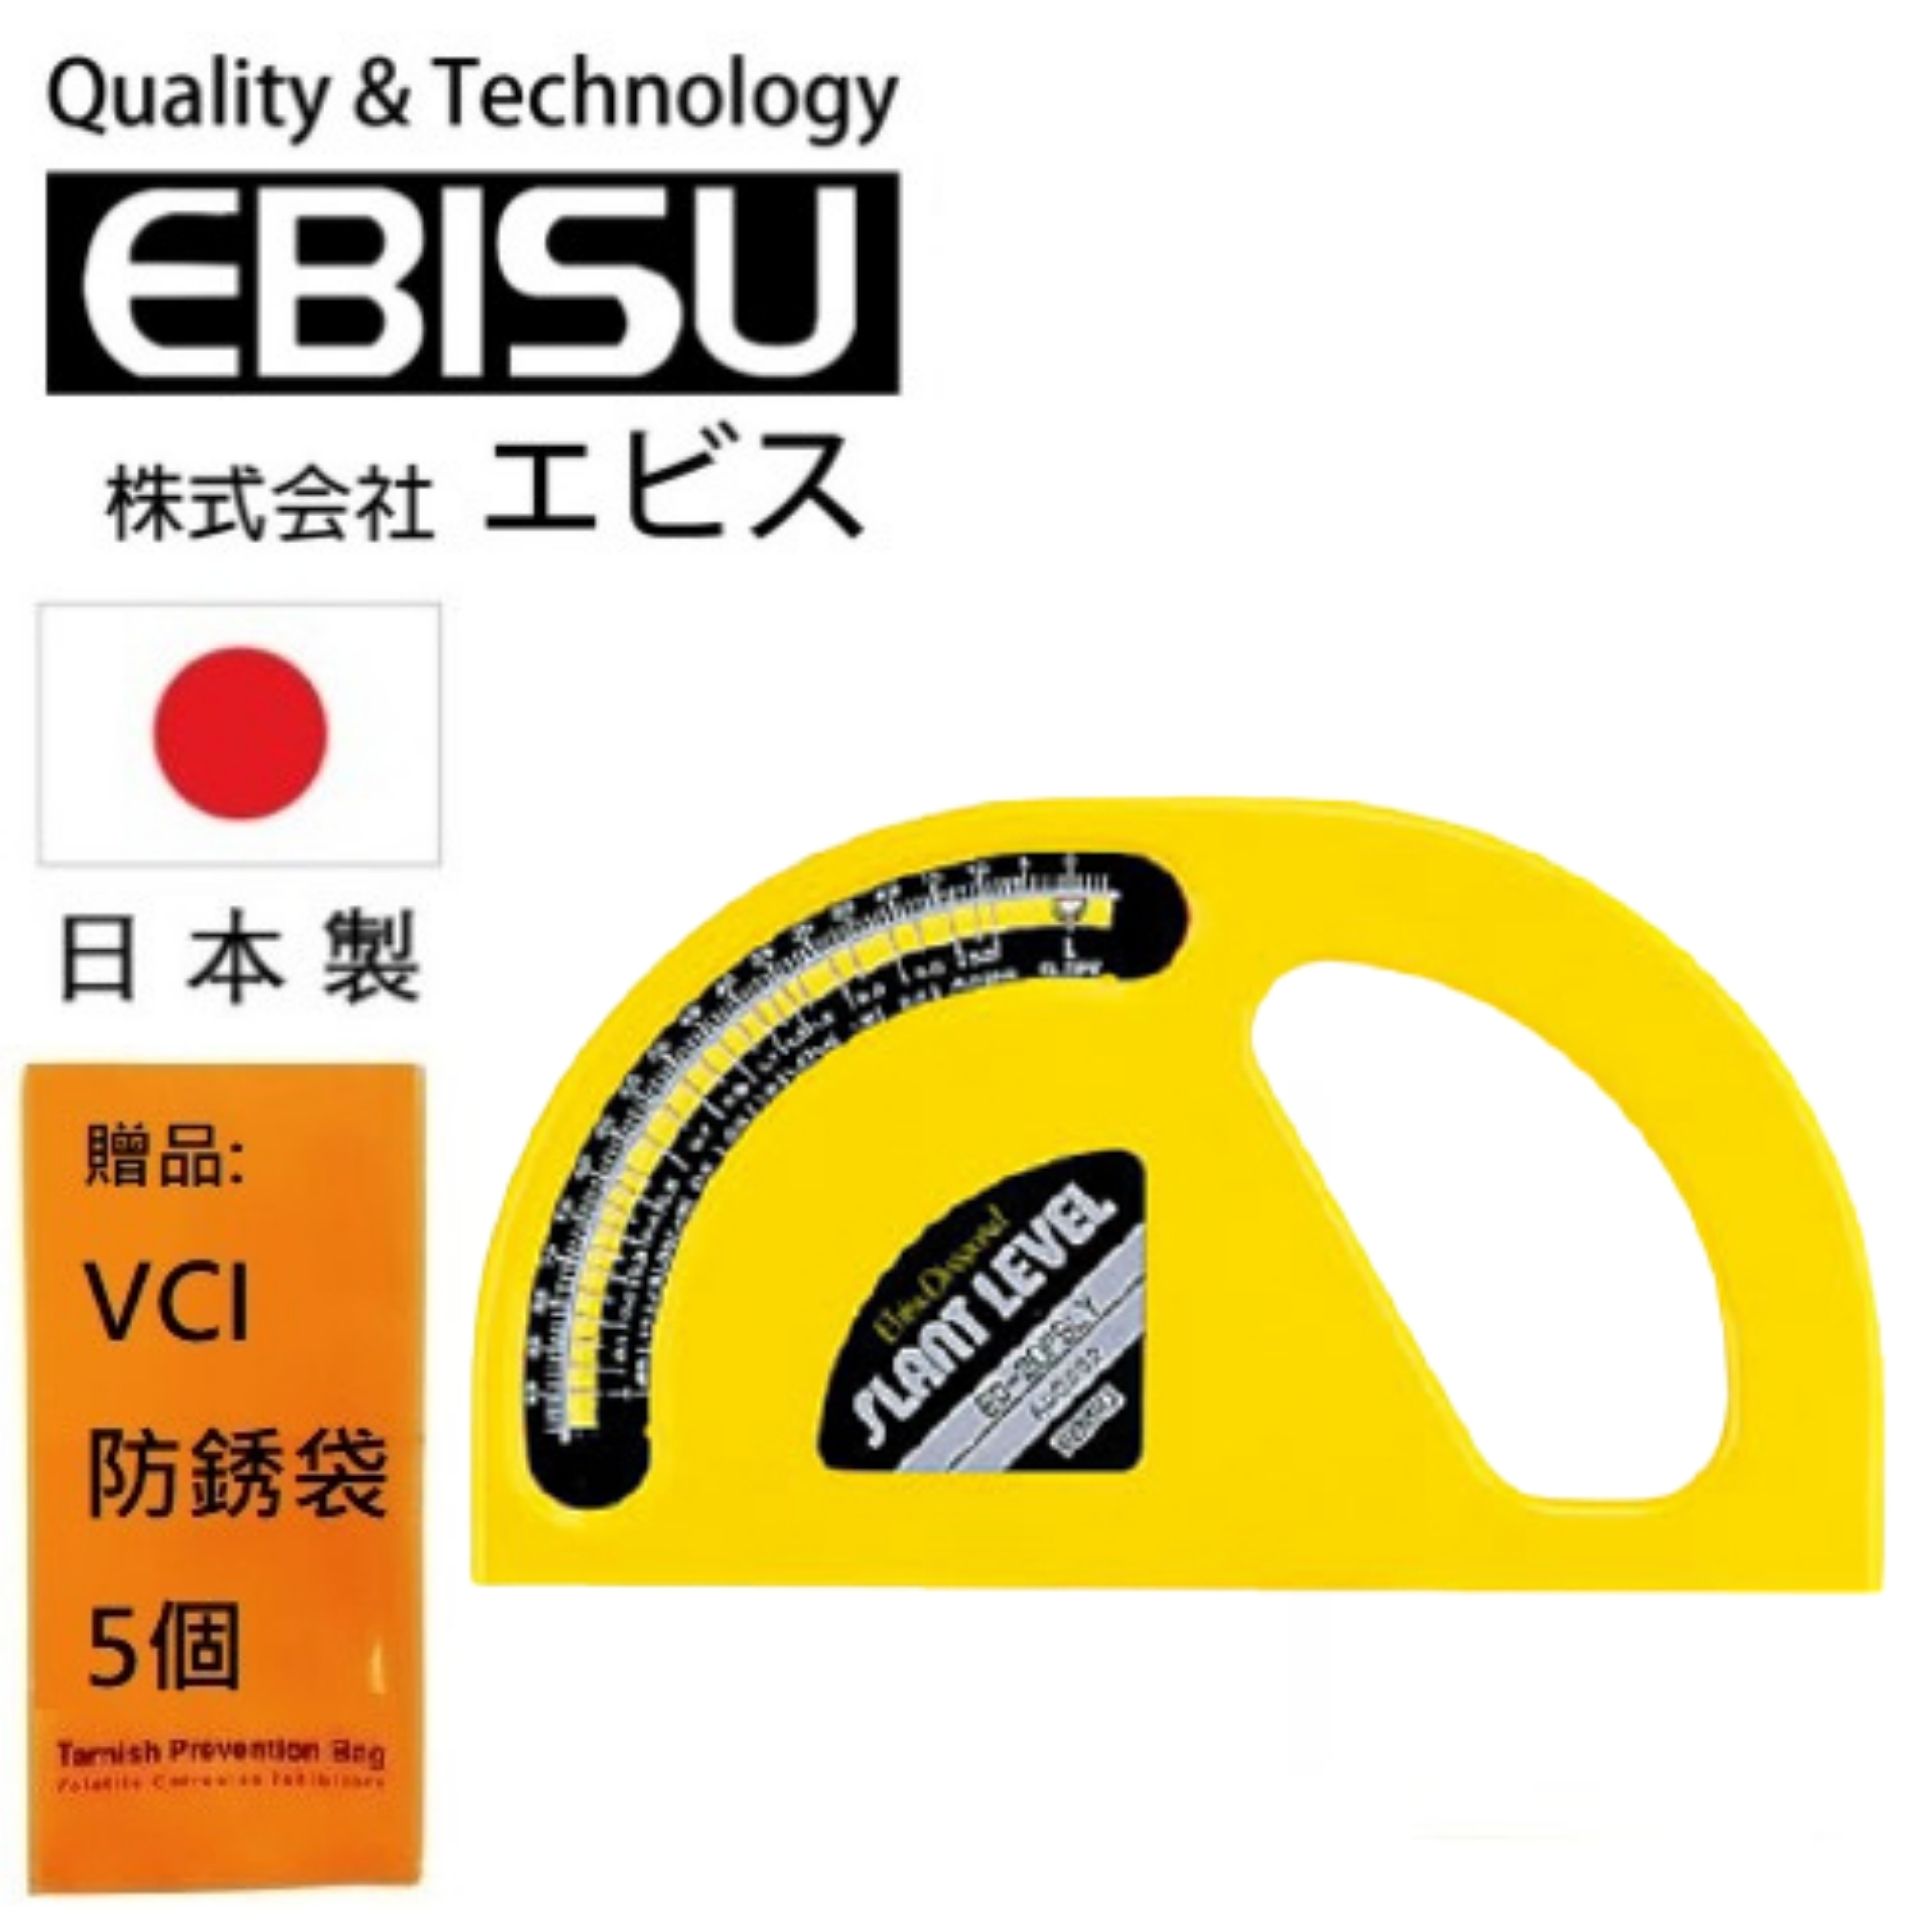 【日本EBISU】氣泡式 角度儀 (不附磁) ED-20PSLY 適用於建築.土木.配管.電器